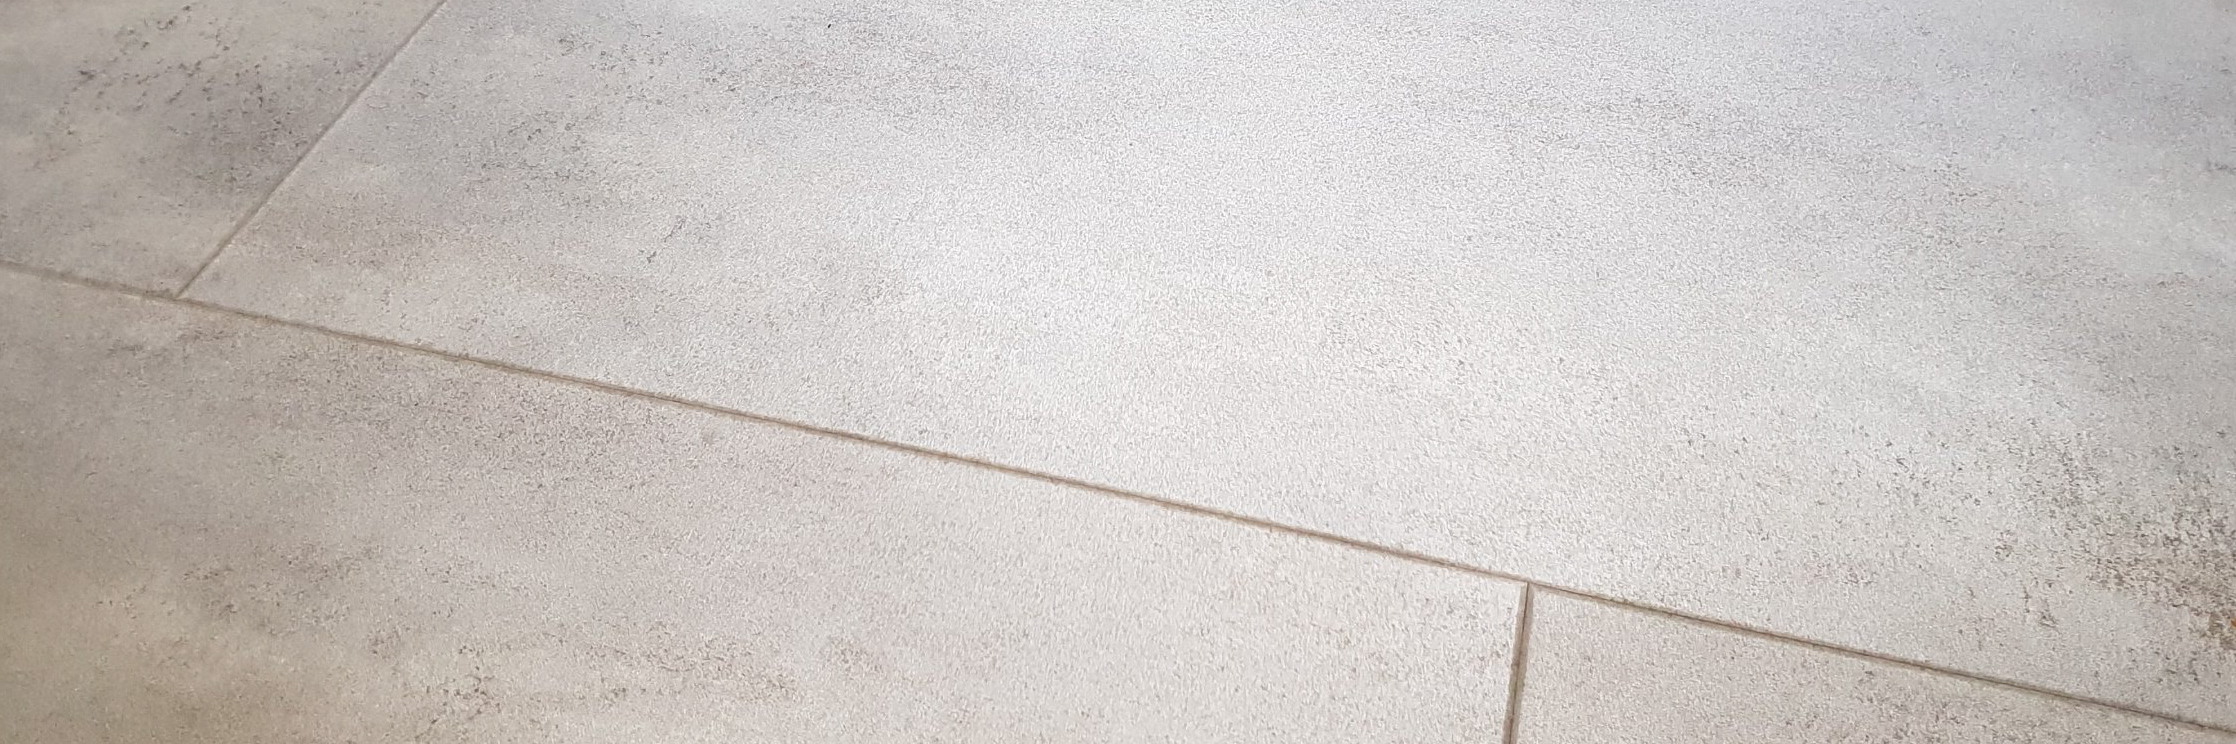 Photo de revêtement de sol très résistant en dalle de PVC pour une chambre ou pour des locaux d'entreprise posé par Daniel Henriet votre artisan peintre à Besançon et dans la région Franche Comté